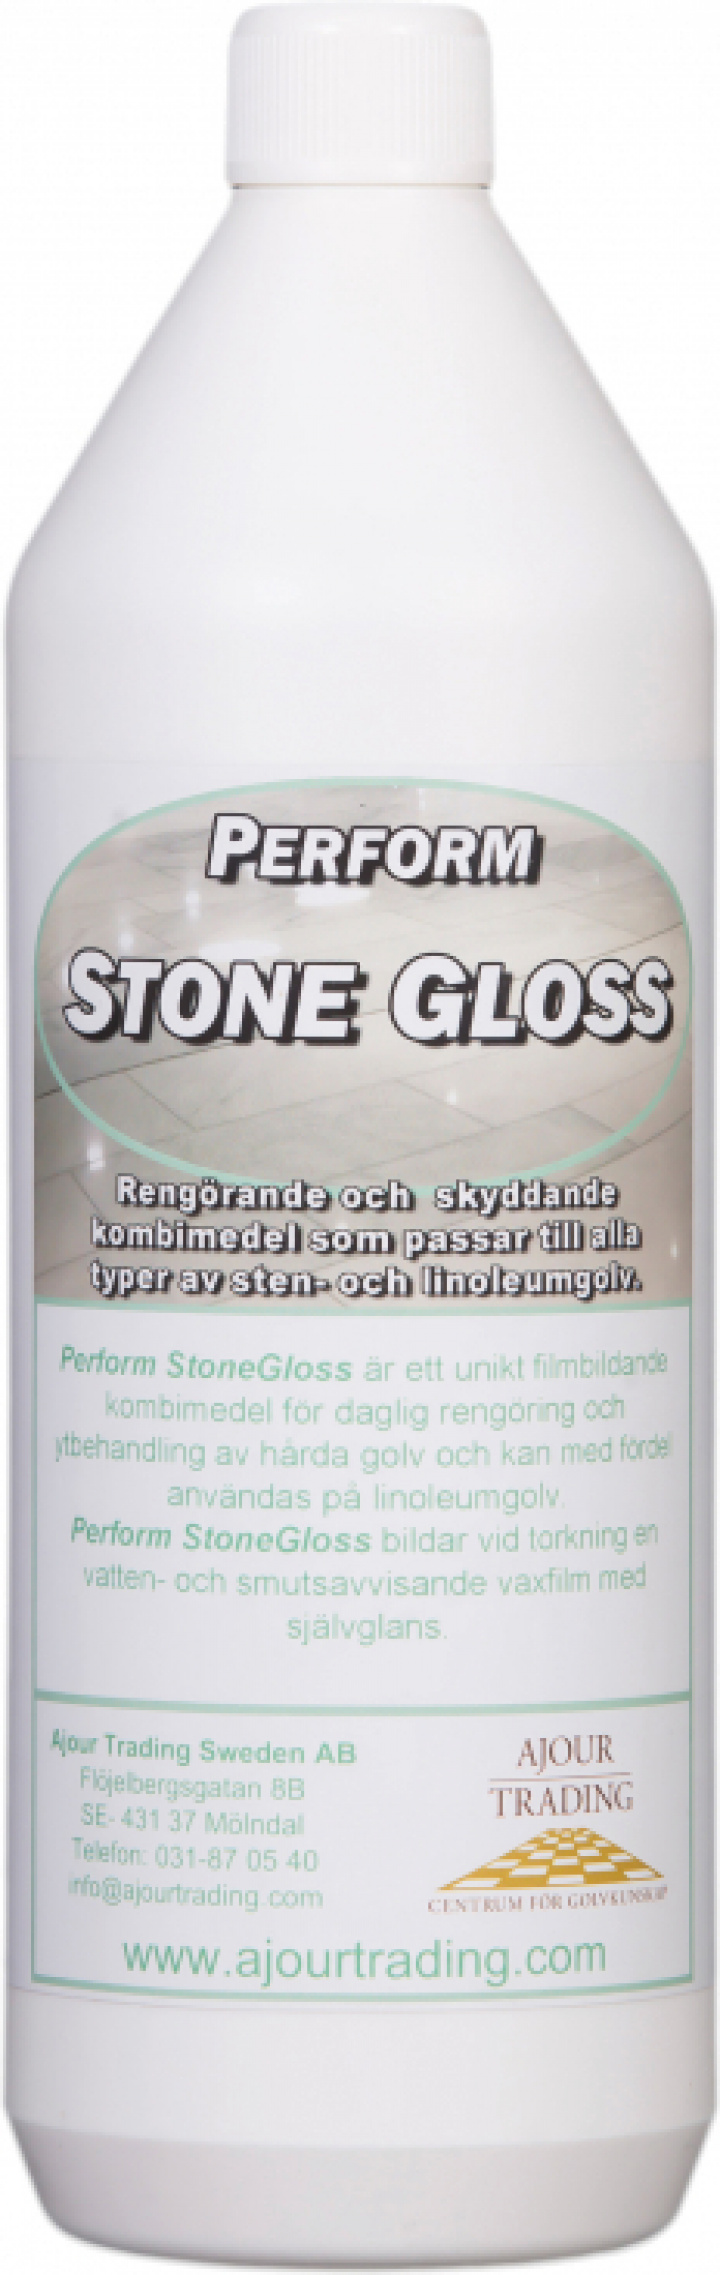 Perform Stone Gloss i gruppen Stdutrustning / Stdkem & Golvvrd / Allrengring hos Stdbutiken (37068r)